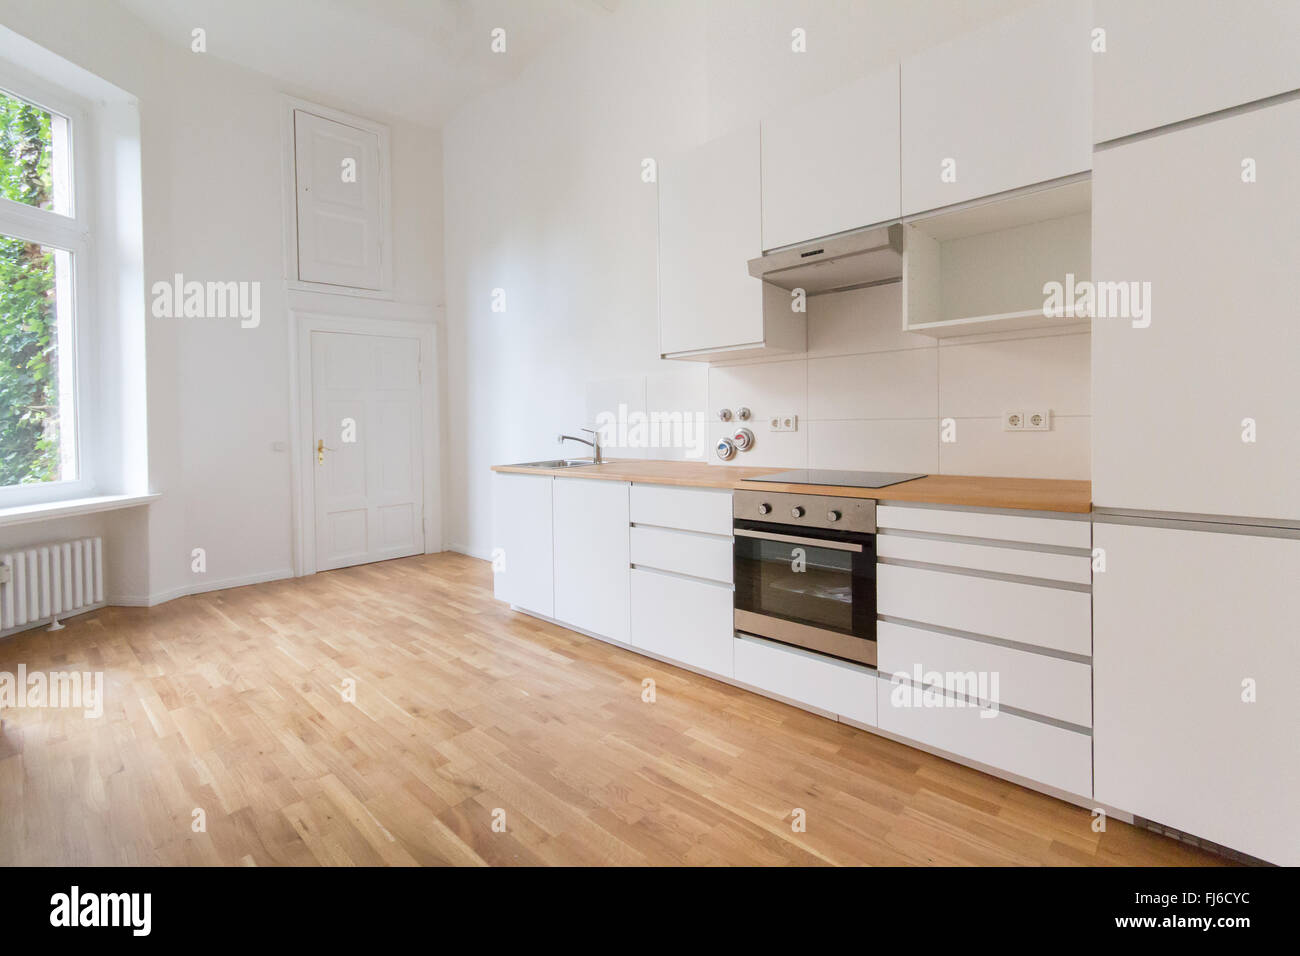 Nouvelle cuisine, frais rénové appartement, cuisine moderne blanc avec parquet / plancher Banque D'Images